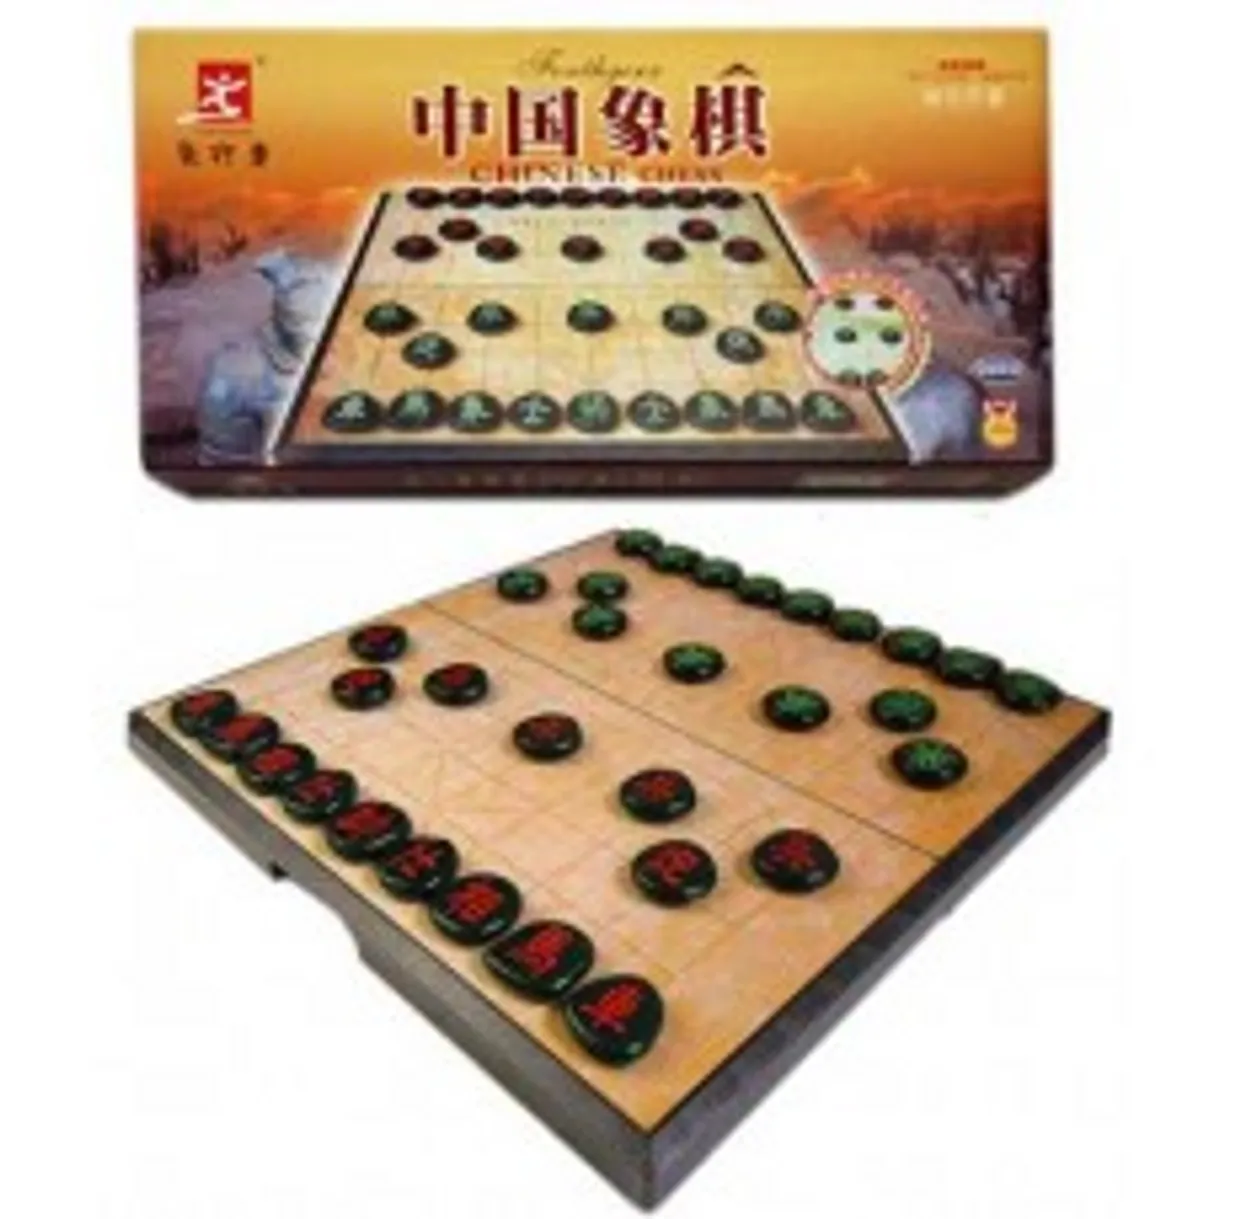 Xiang-Qi Chinees-schaak cassette